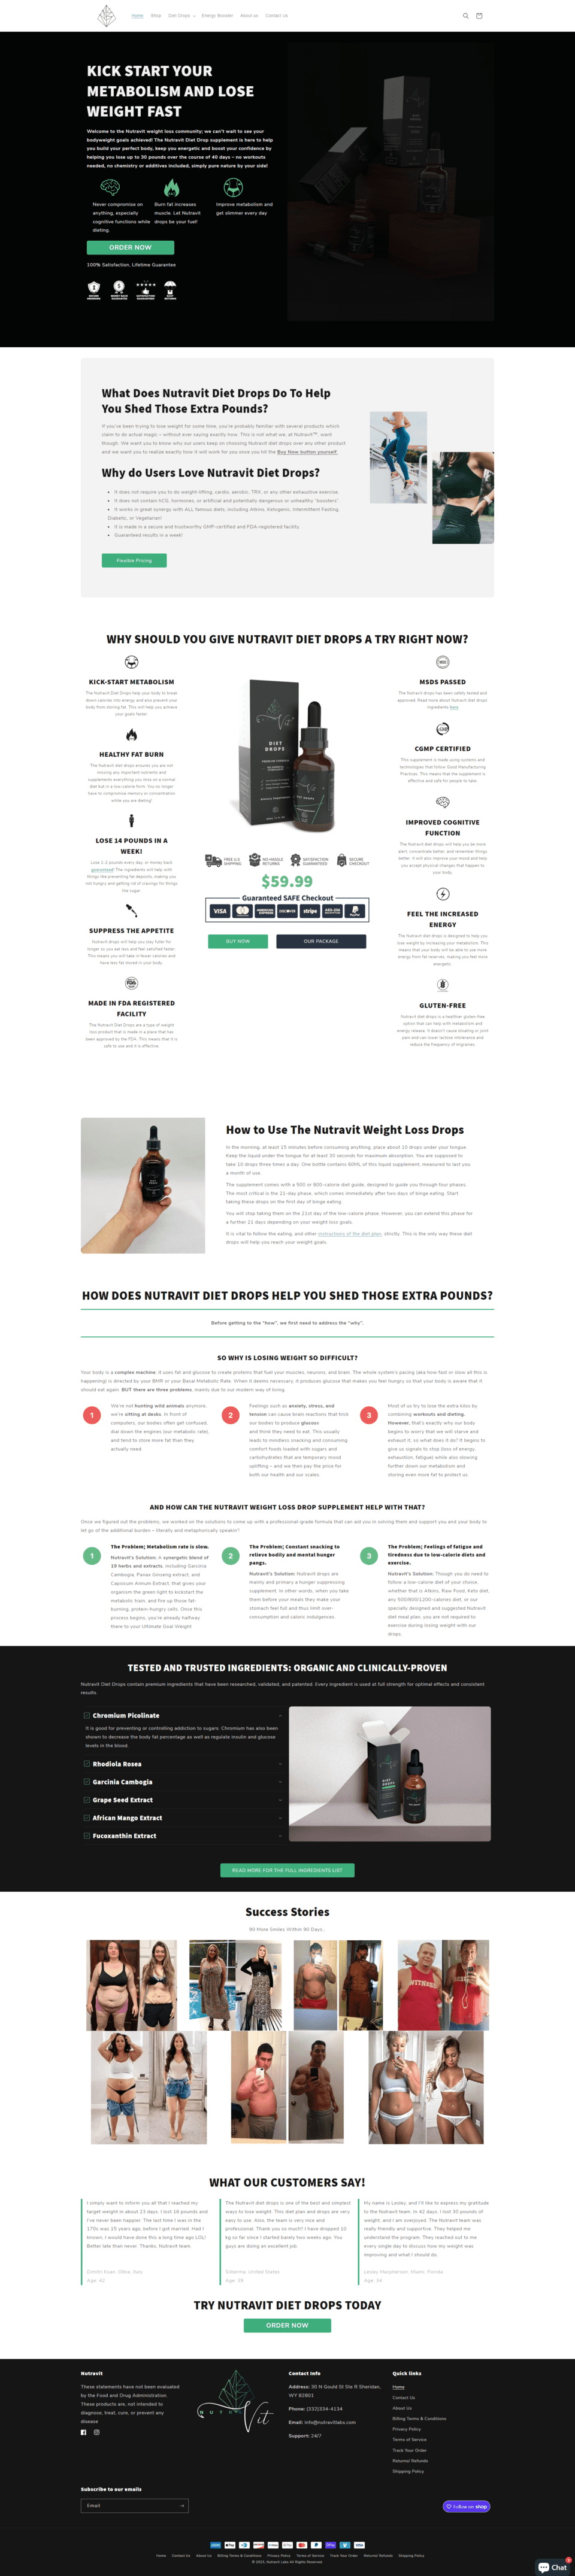 Homepage of the website Nutravit Lab